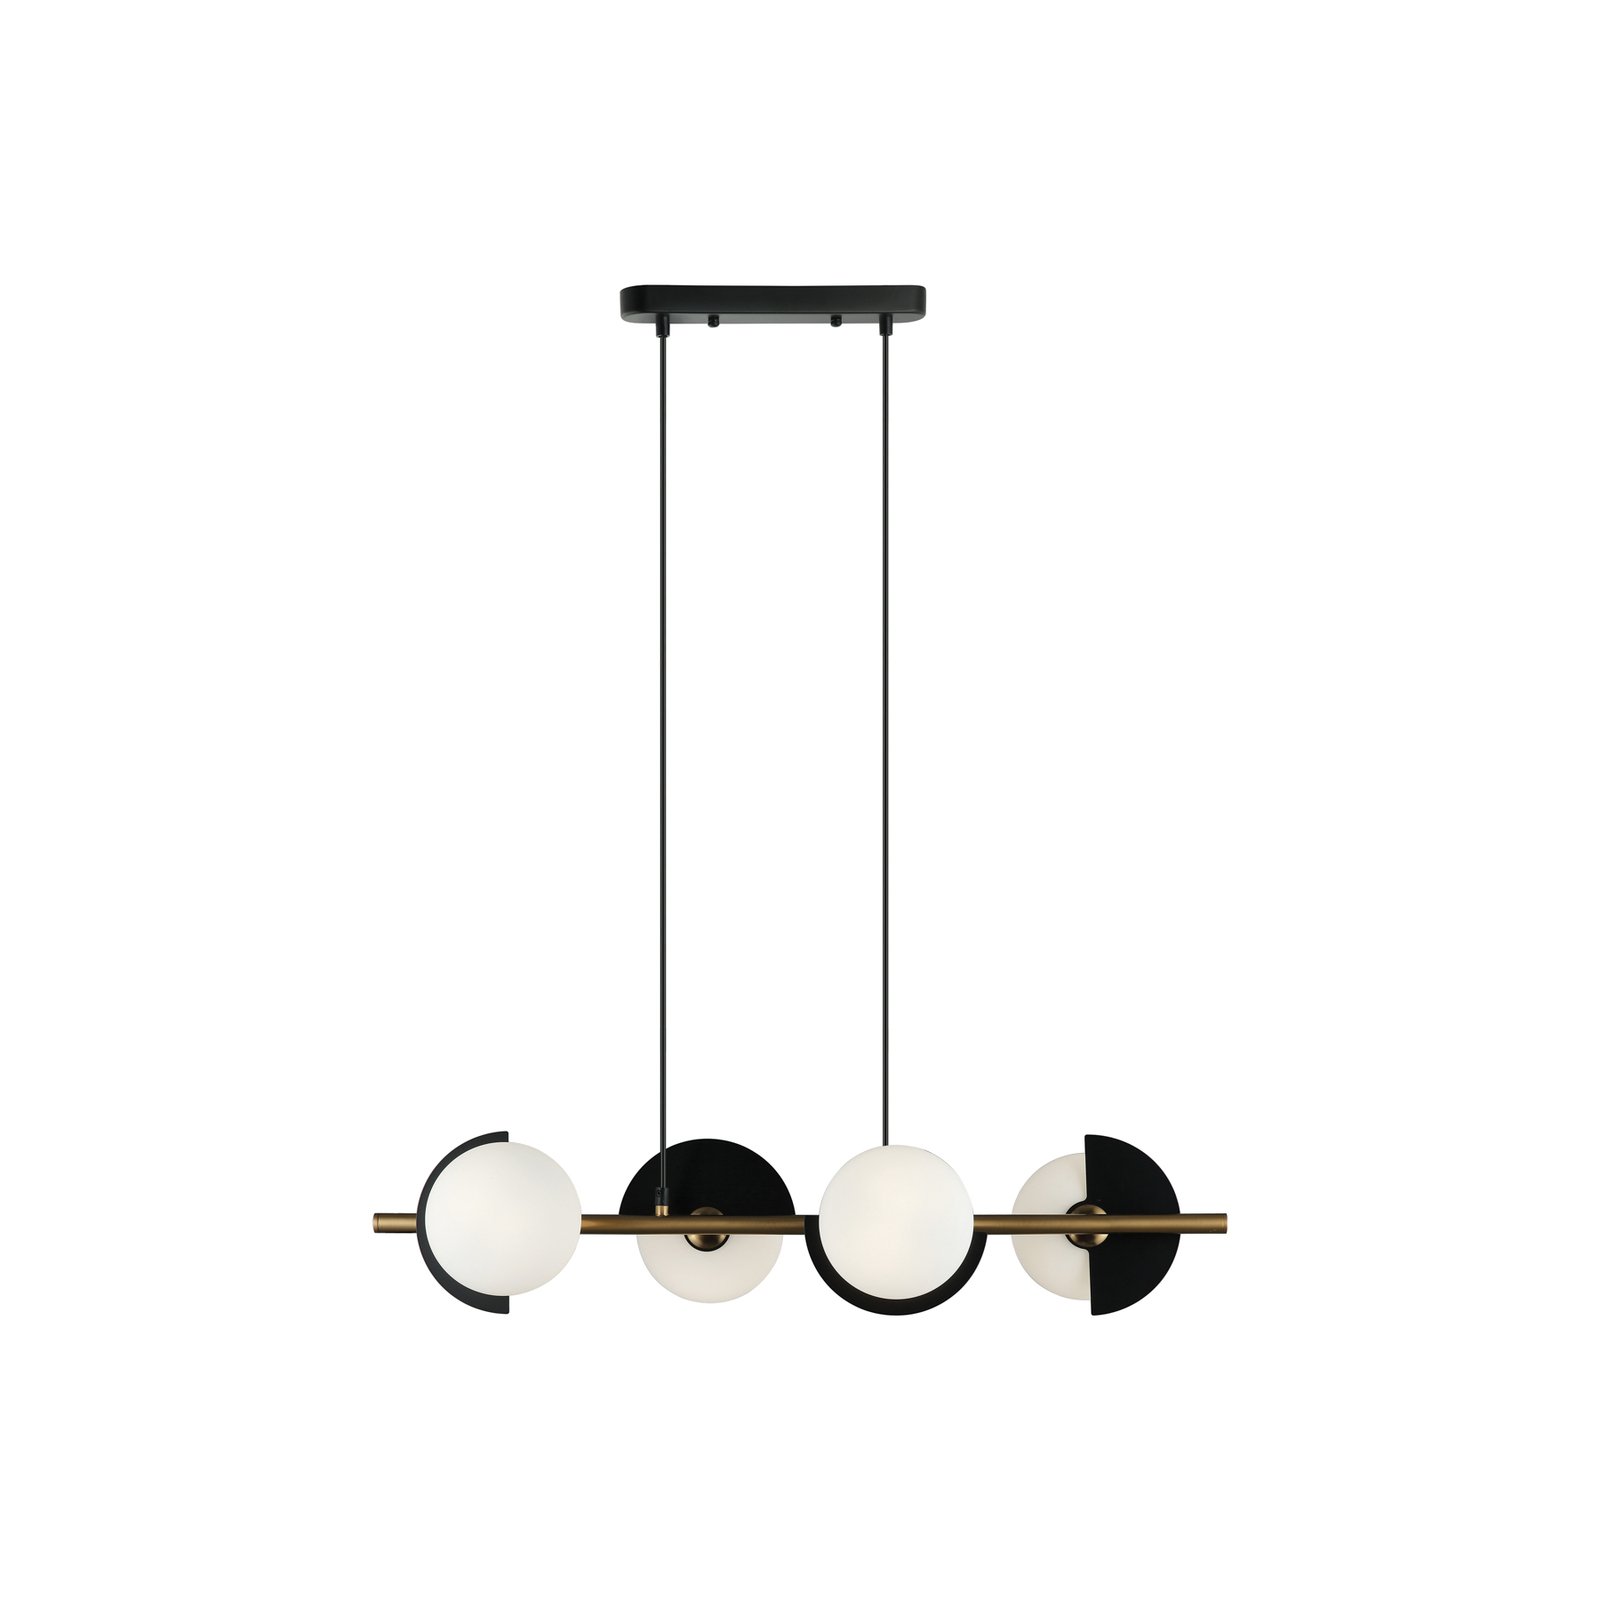 Darcy hanglamp, zwart/brons, 4-lamps